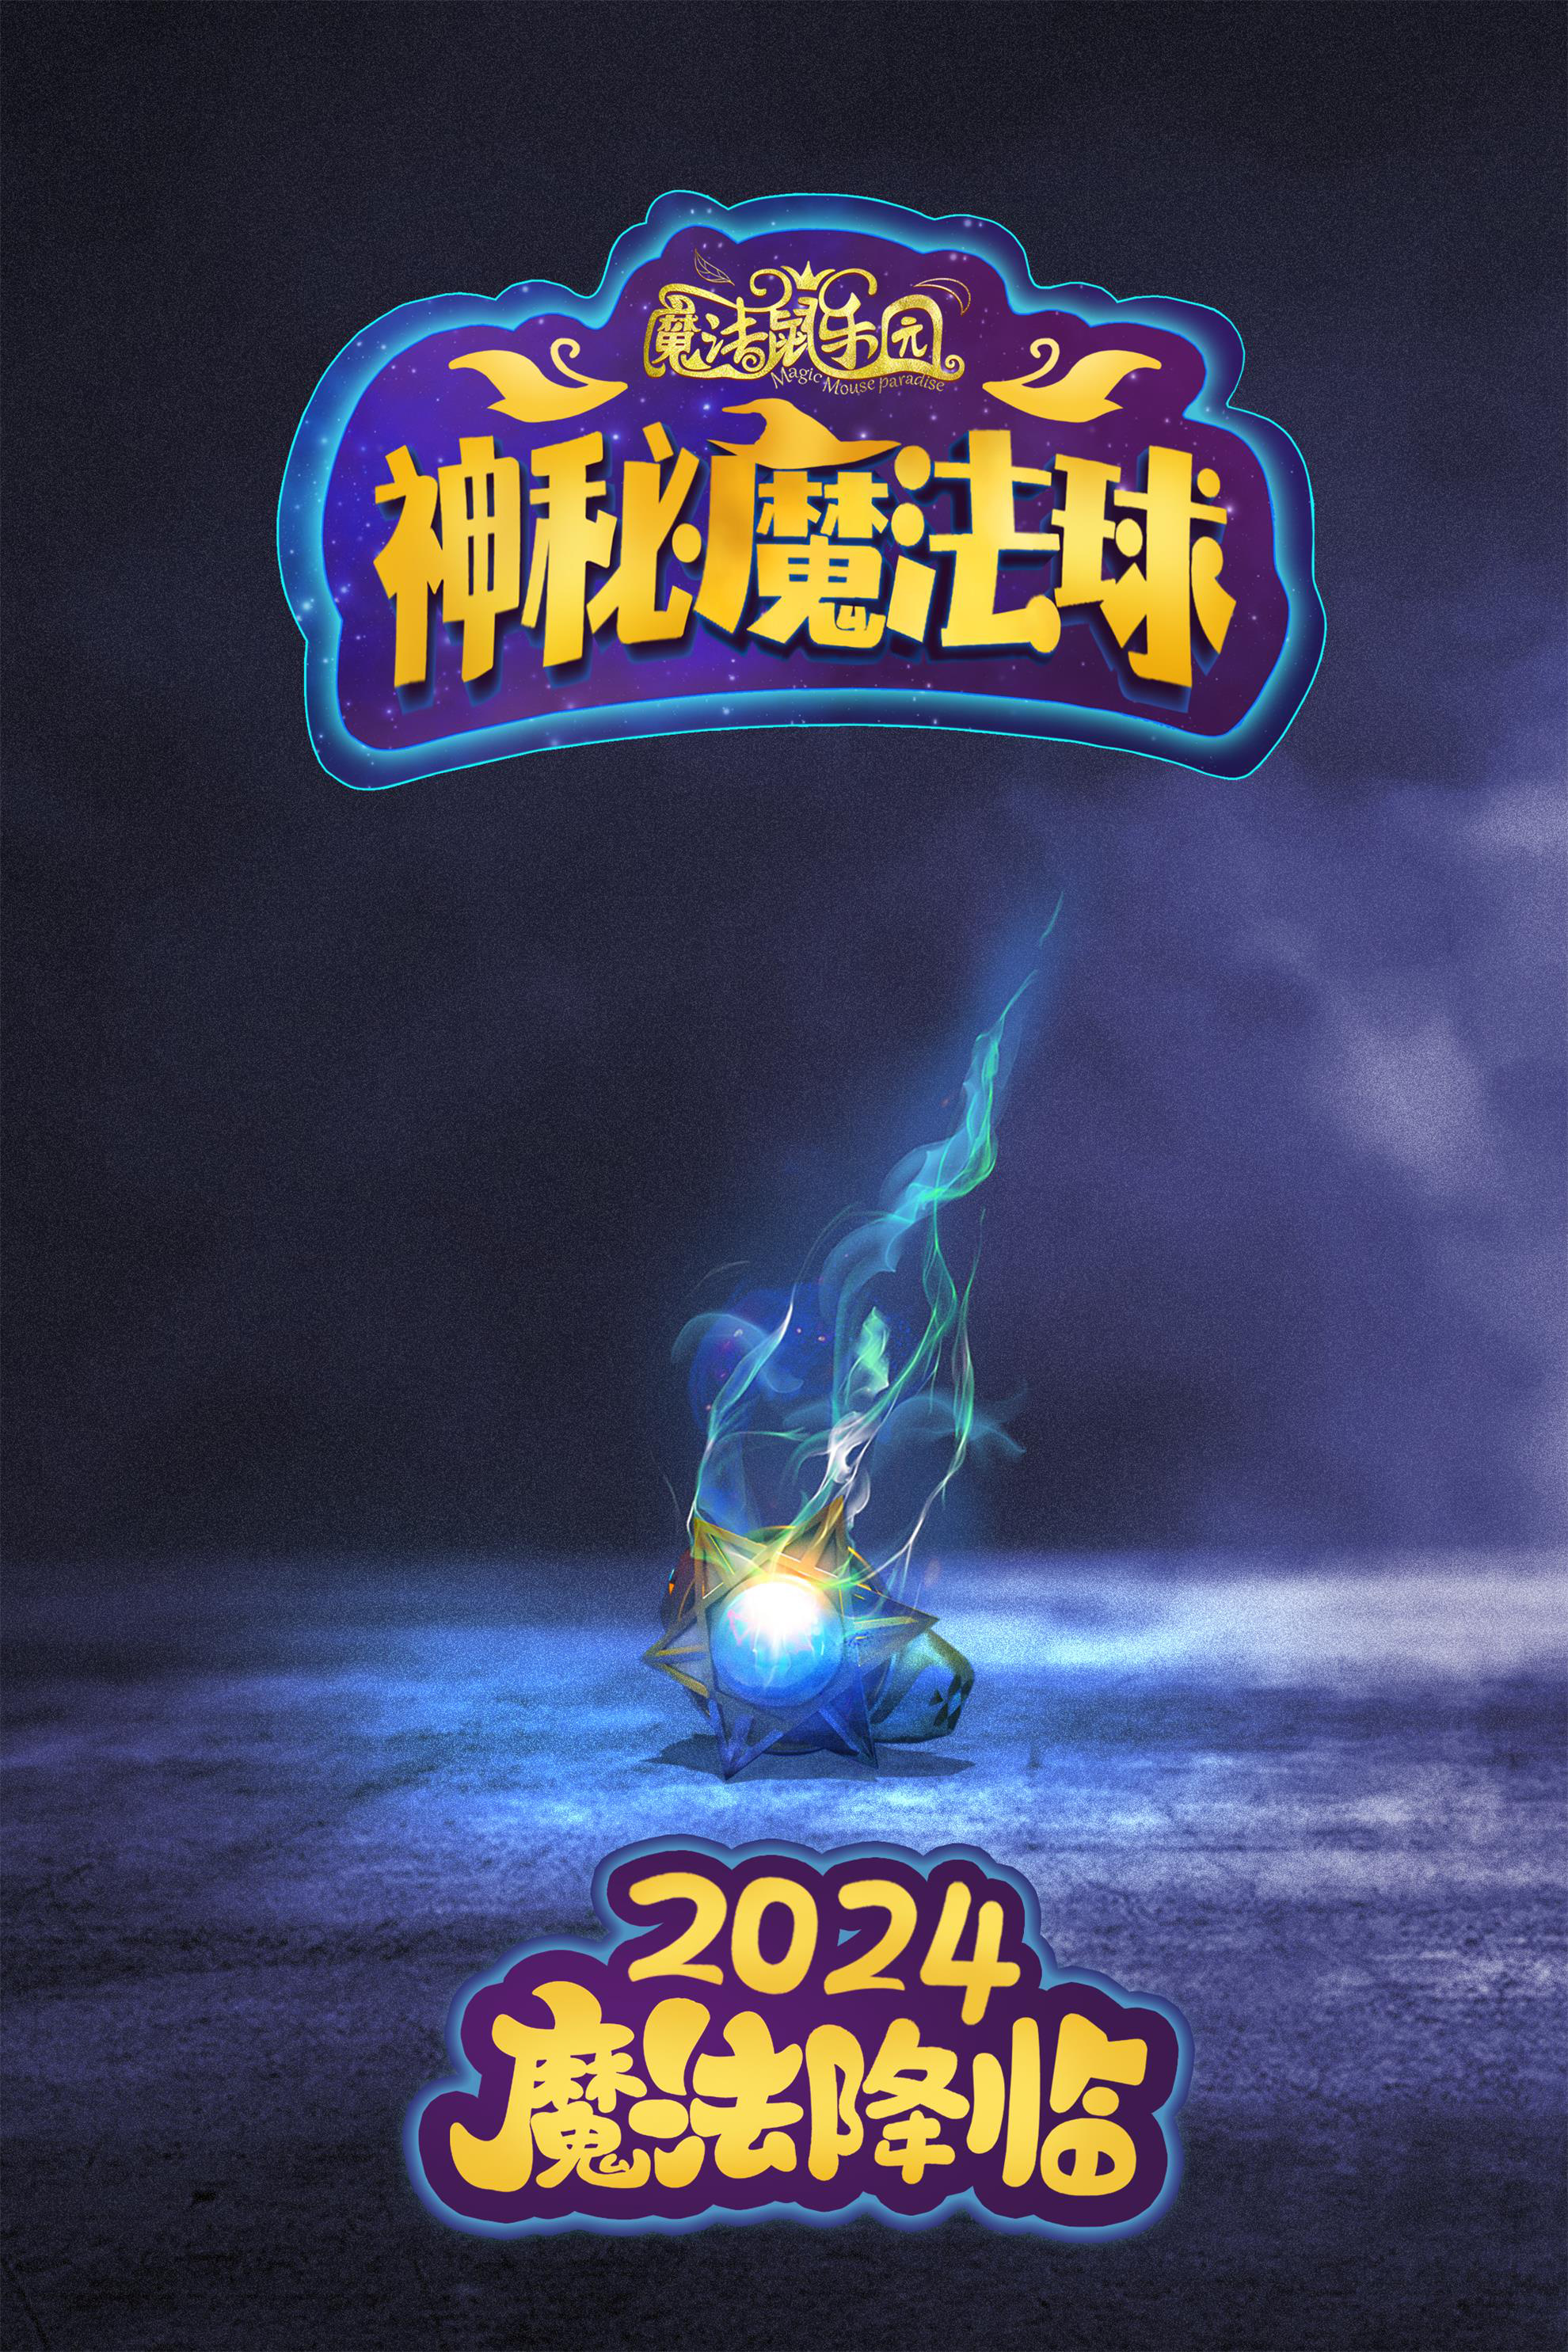 《魔法鼠乐园2》曝先导海报 上演猫鼠魔法大战